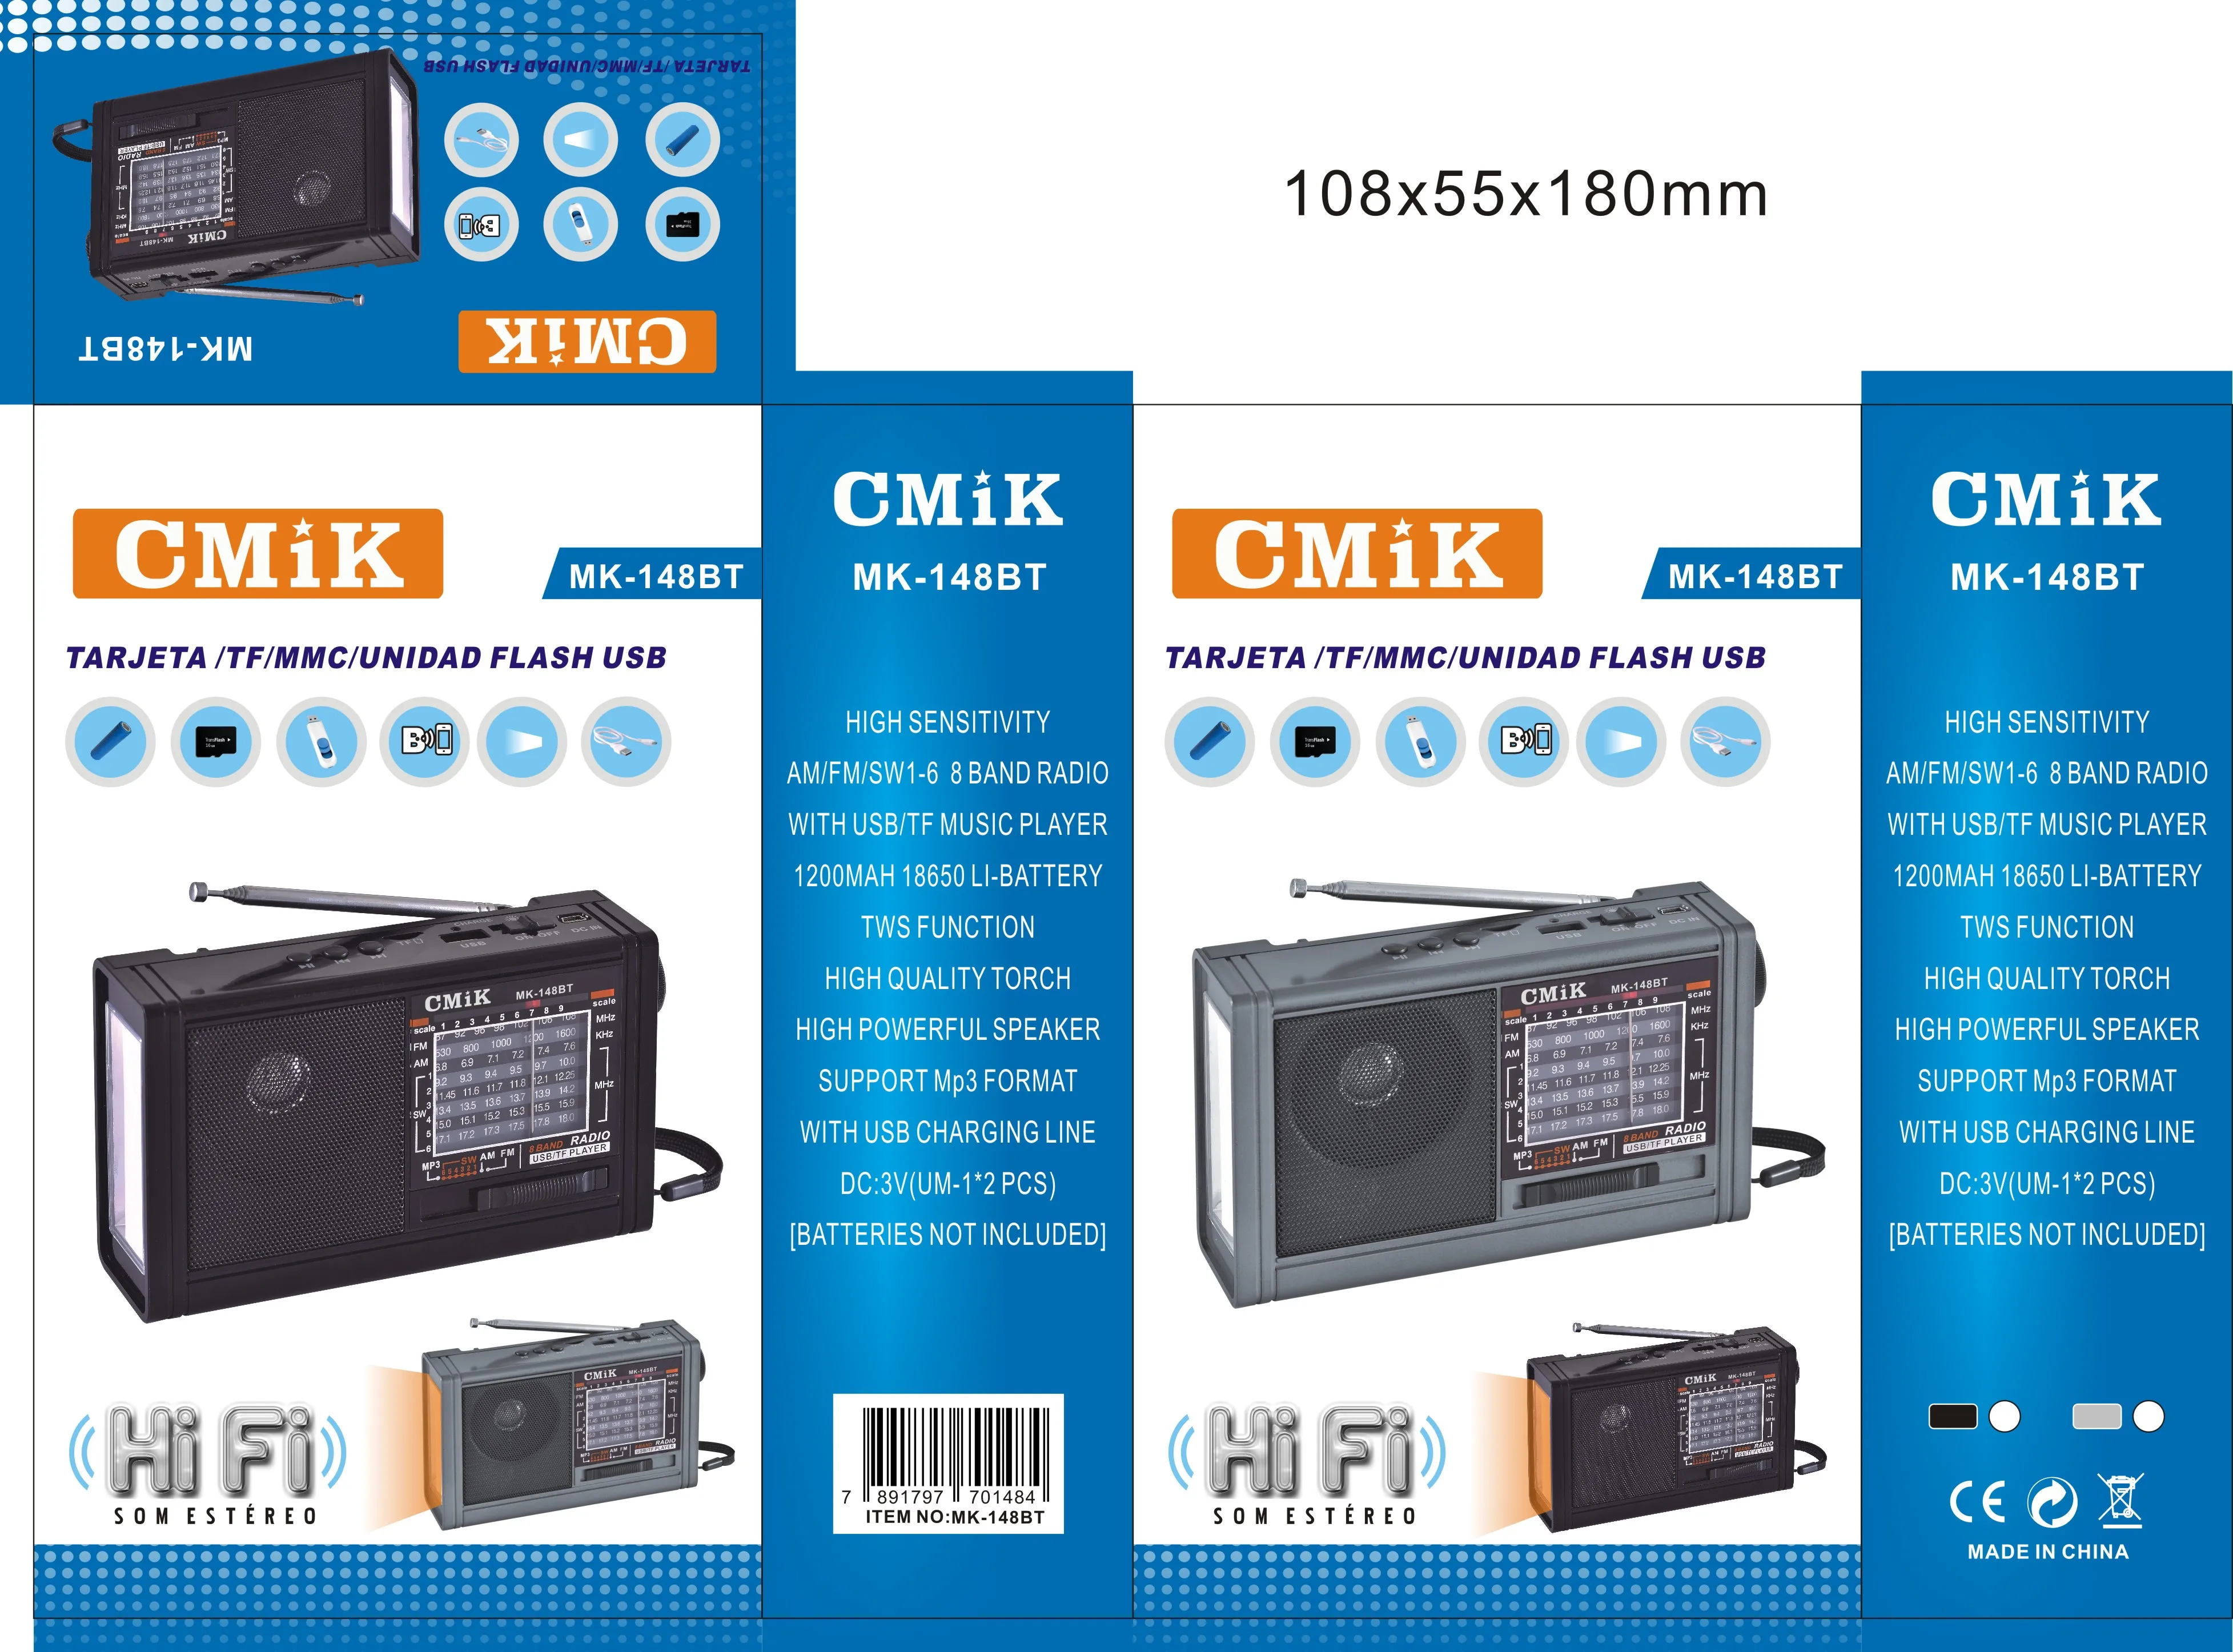 cmik mk-148bt oem led light radio